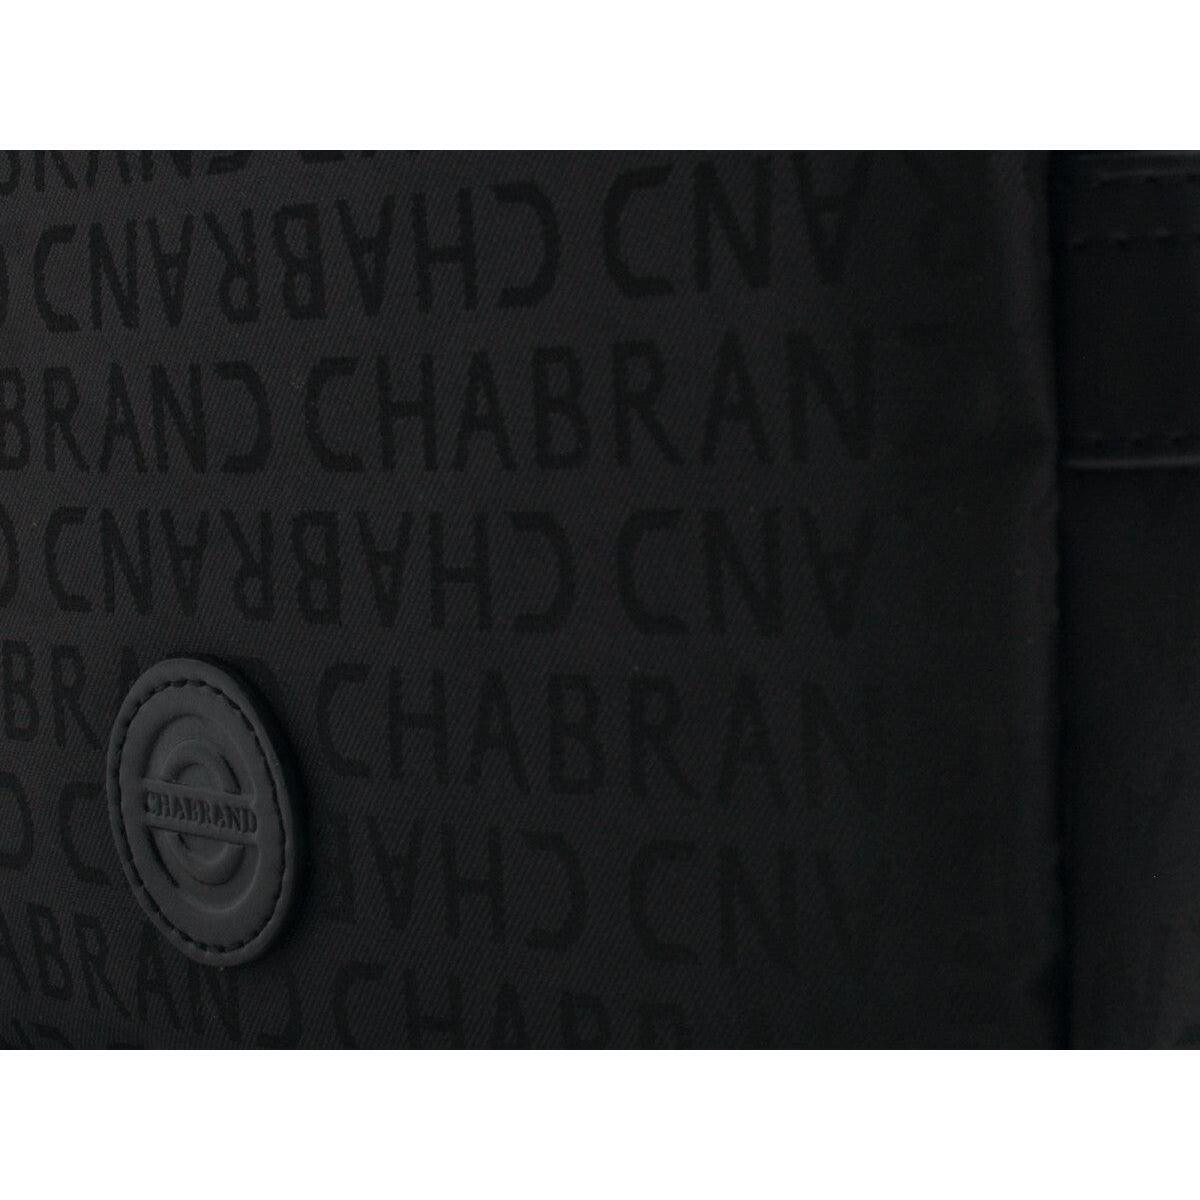 Chabrand Noir Sacoche zippée porté croisé Prado 84239111 WN2KD3Es